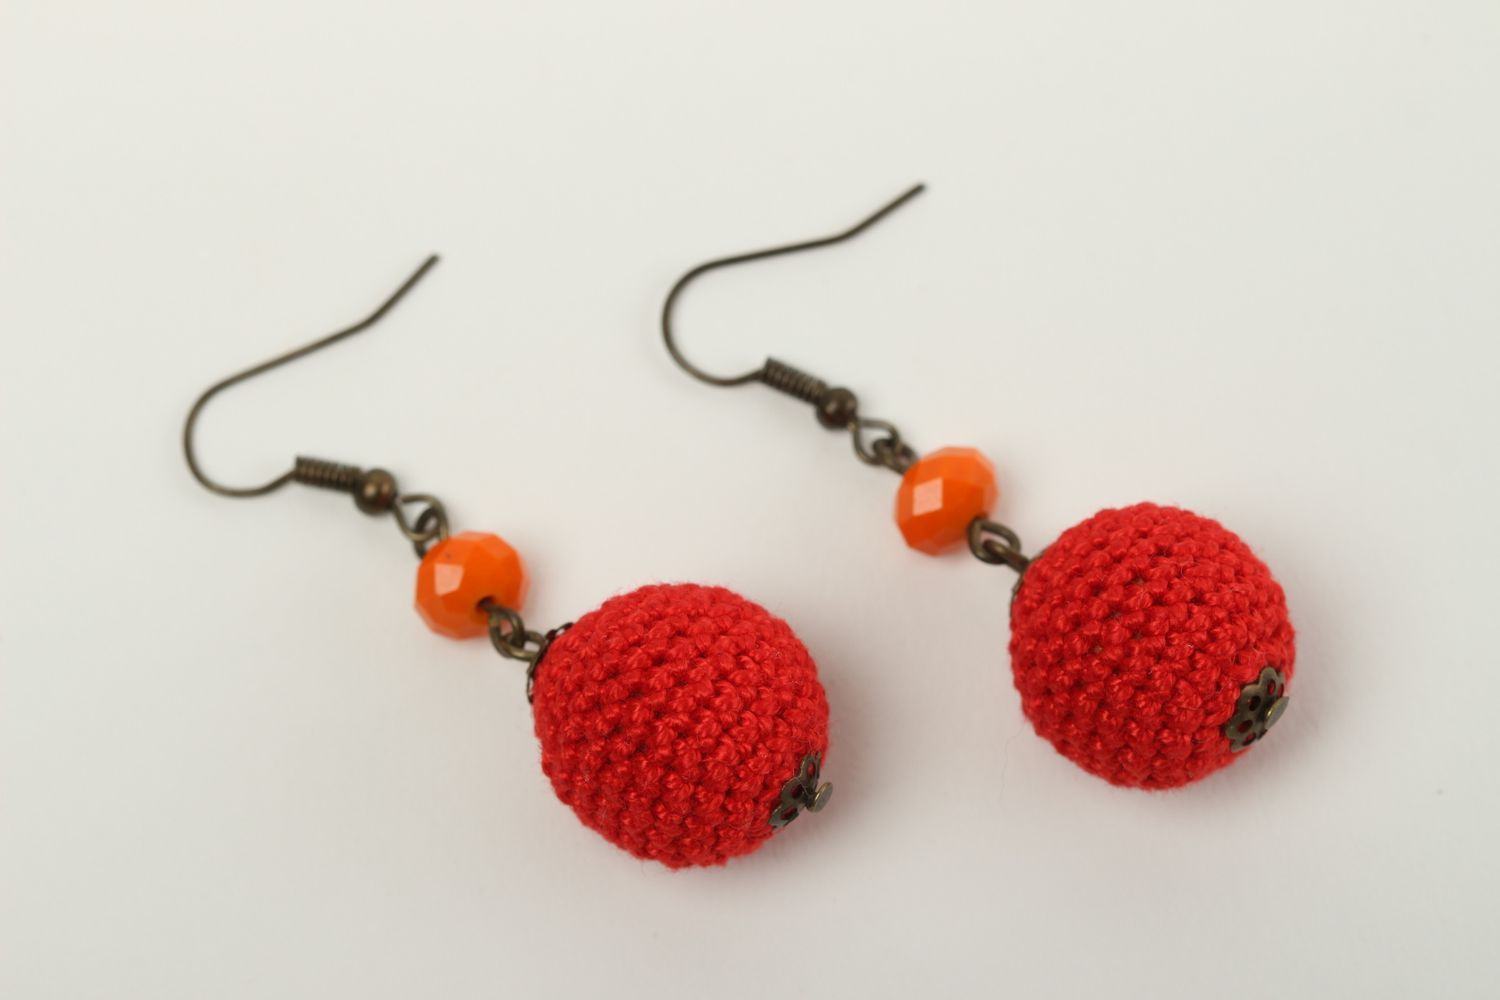 Handmade earrings unusual accessory gift ideas designer jewelry crochet earrings photo 2